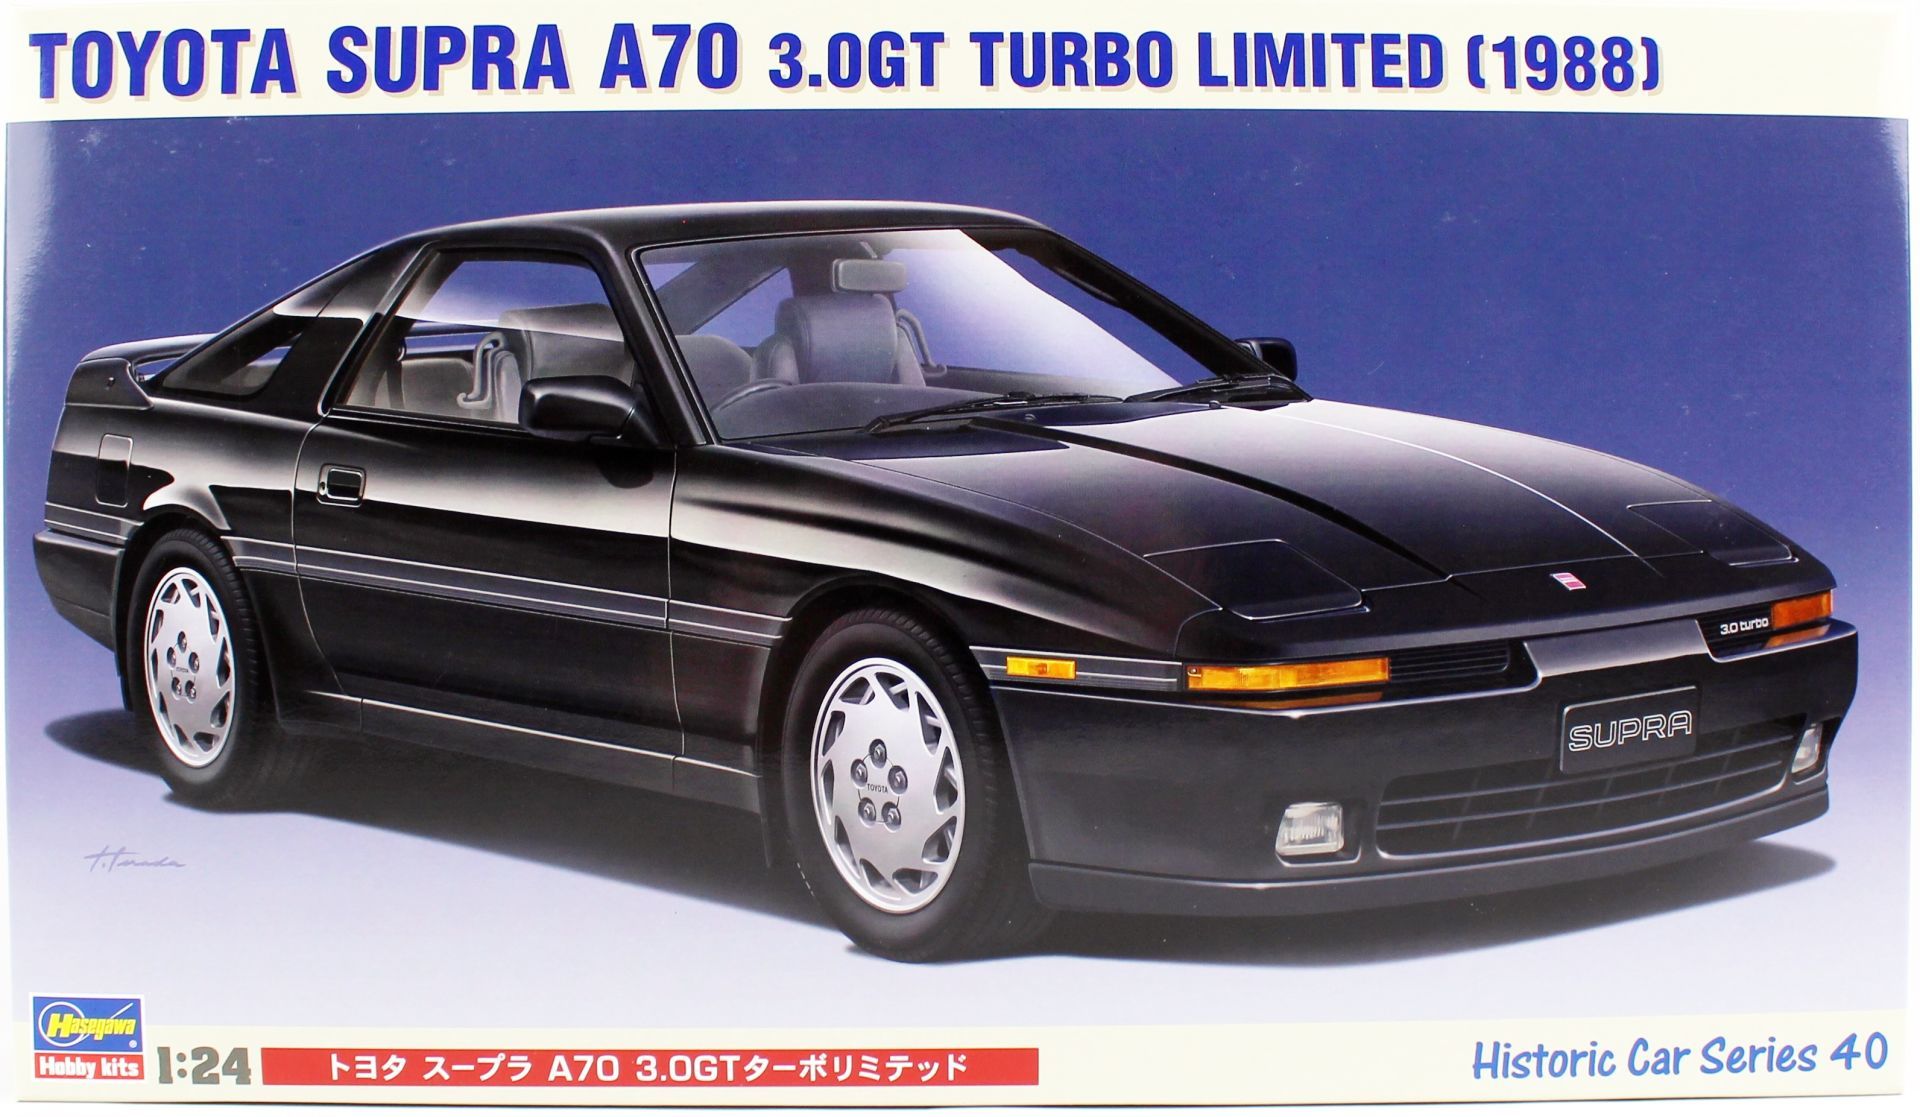 Hasegawa HC40 21140 1/24 Ölçek Toyota Supra A70 3.0GT Turbo Limited Otomobil Plastik Model Kiti